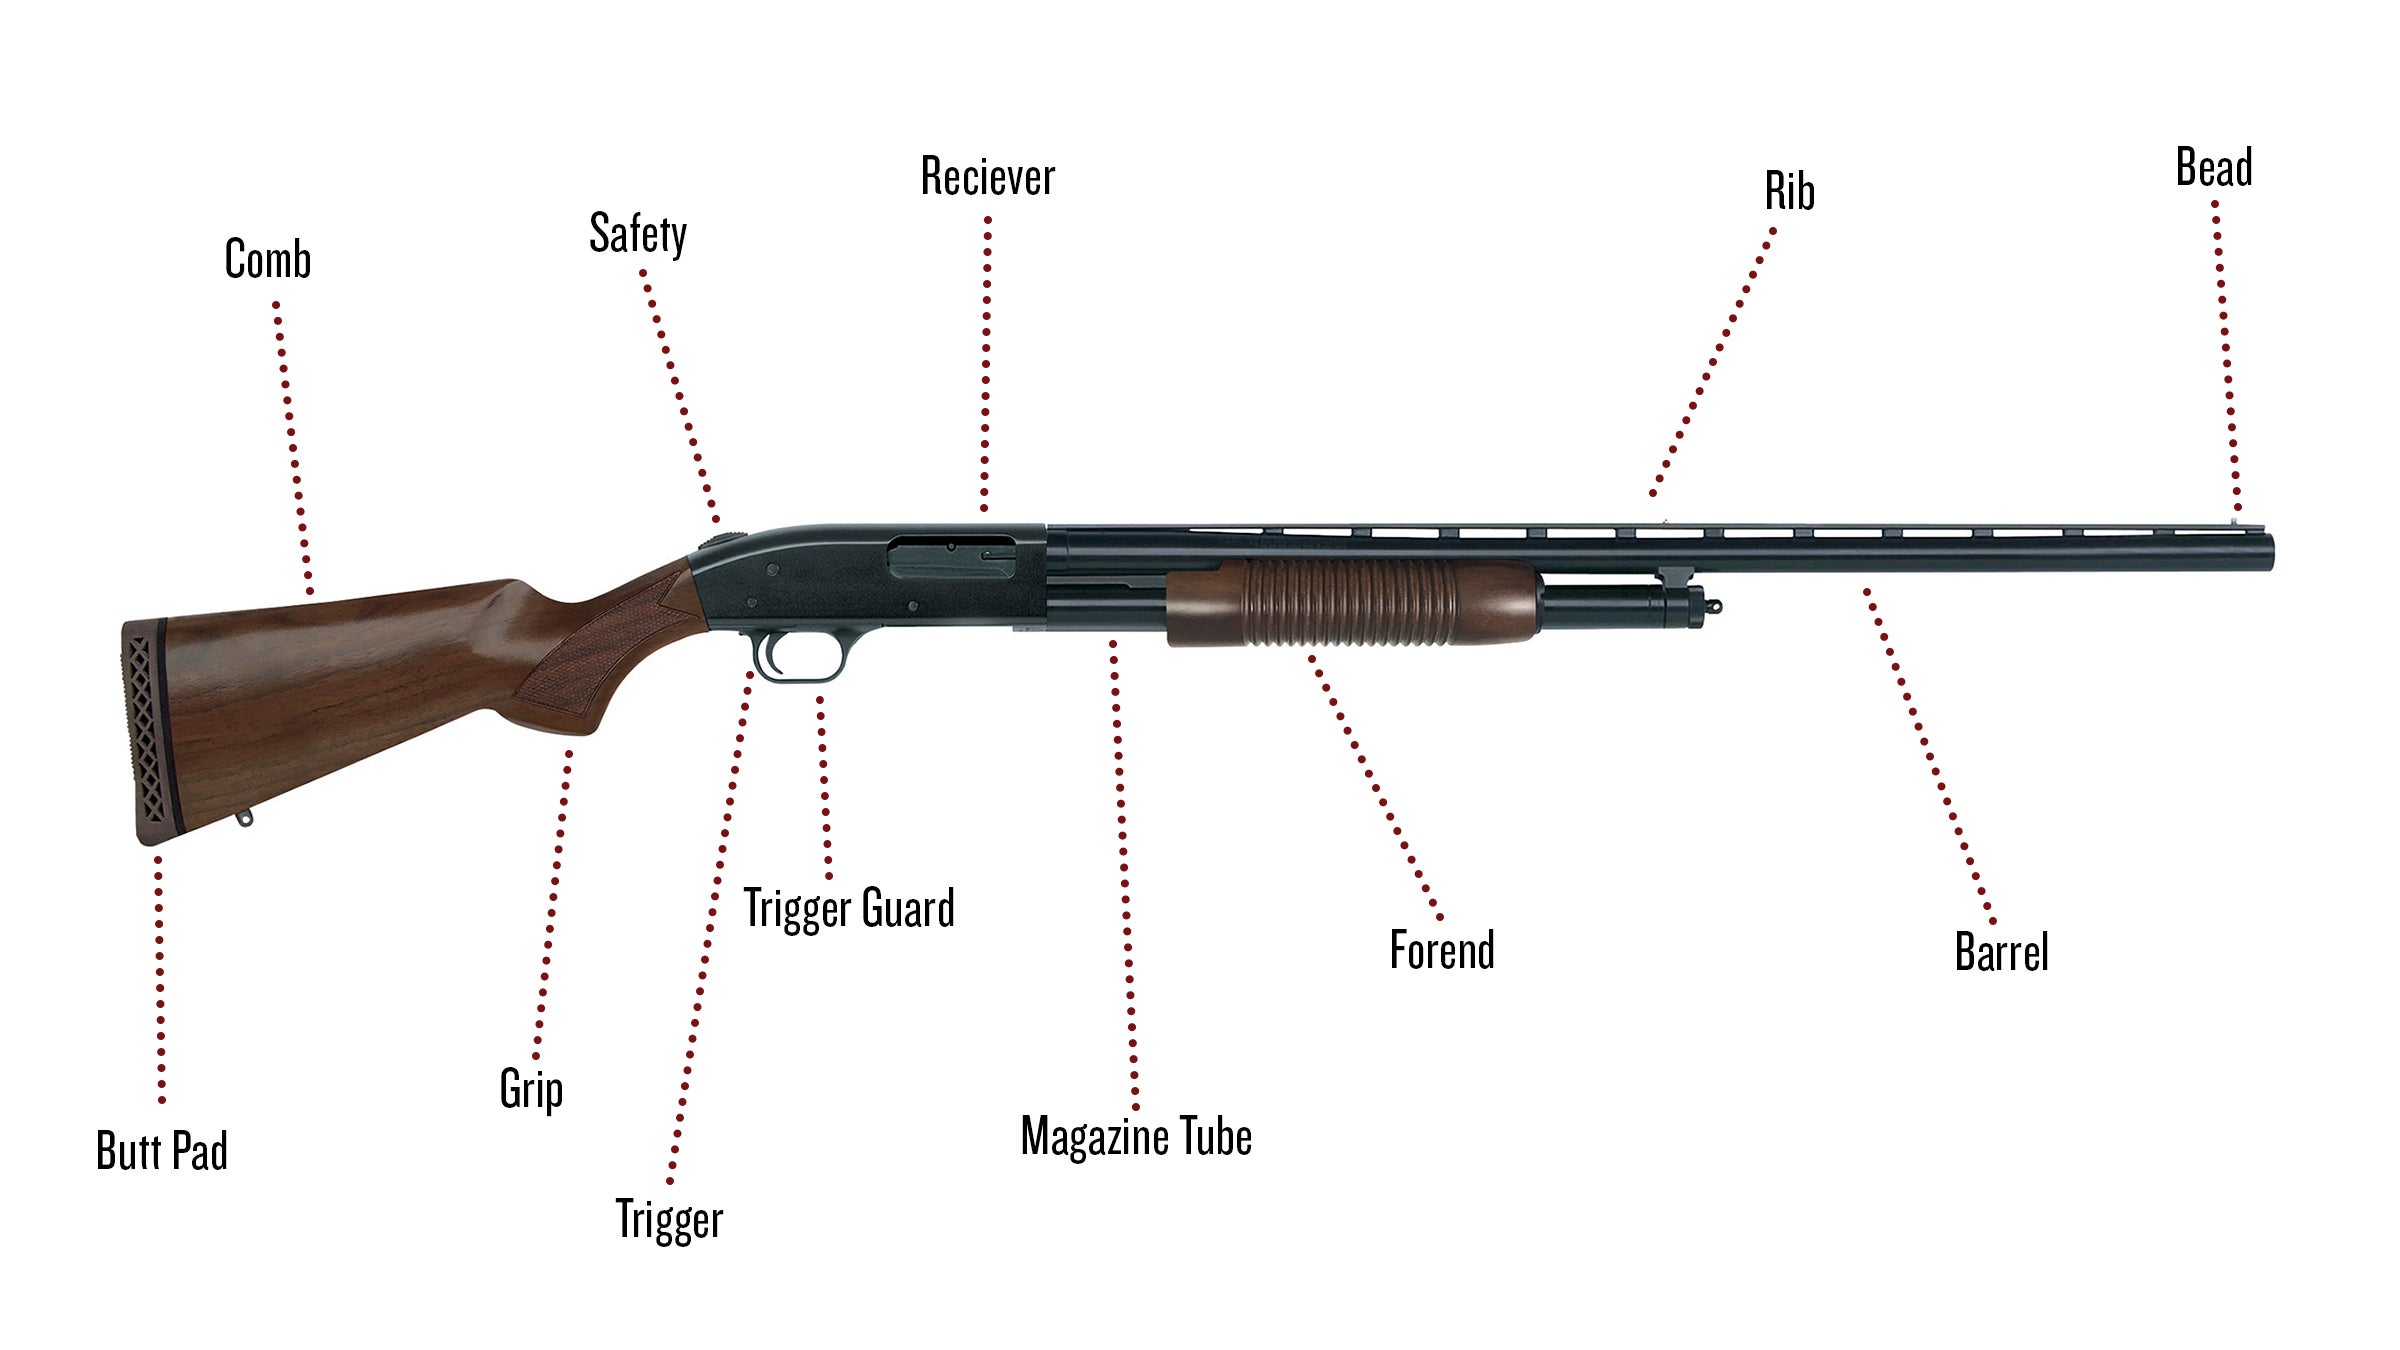 Parts Of A Gun Diagram - vrogue.co